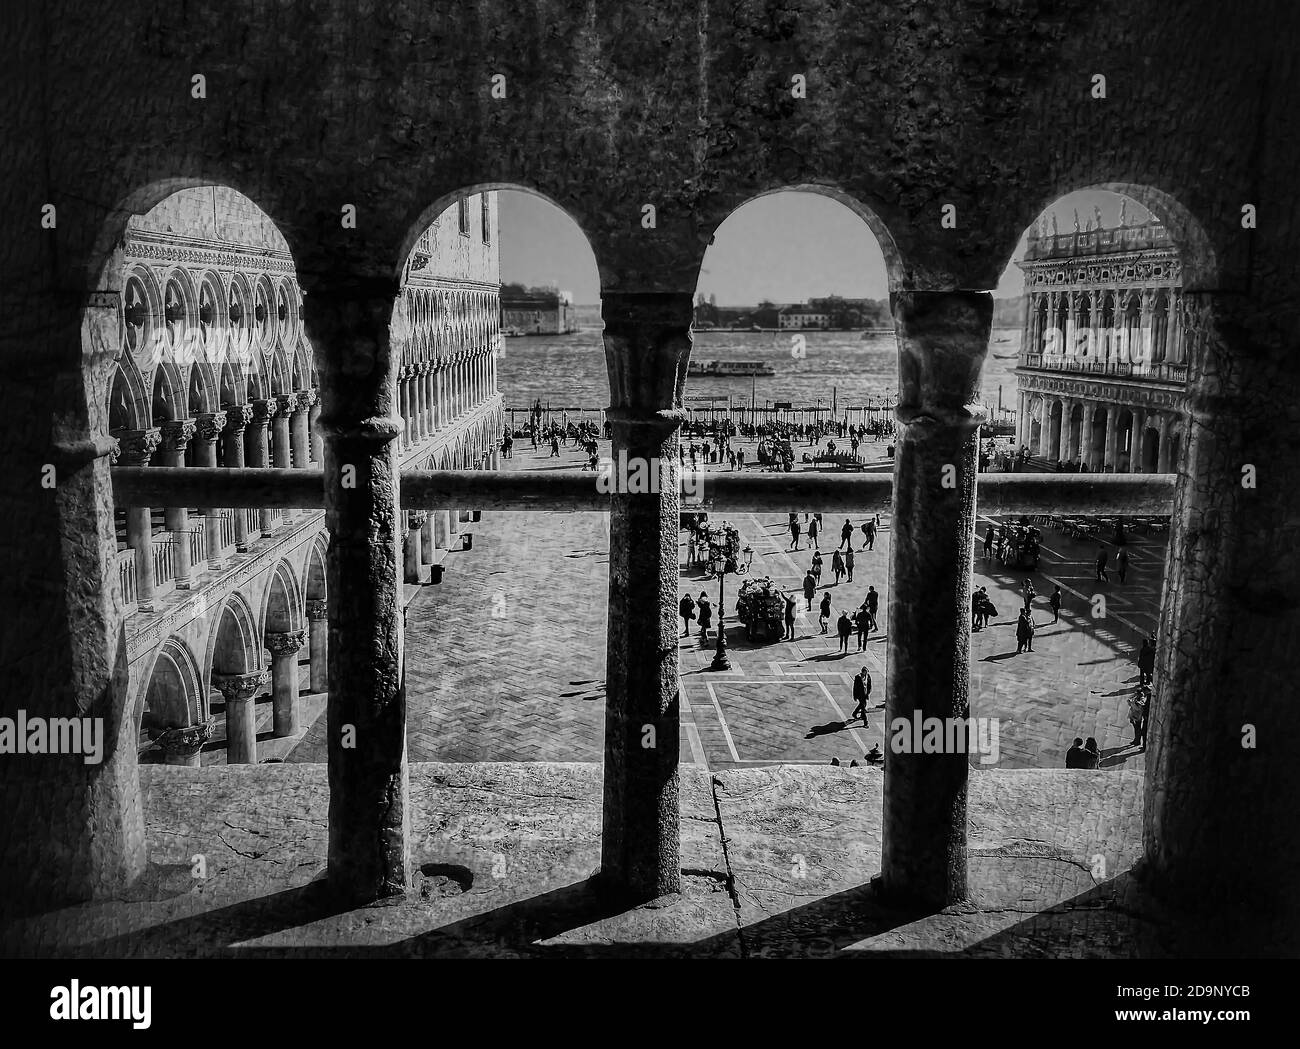 Vista desde detrás de los bares de la Piazza di San Marco en Venecia, en blanco y negro vintage exploración de un antiguo negativo de película. Foto de stock